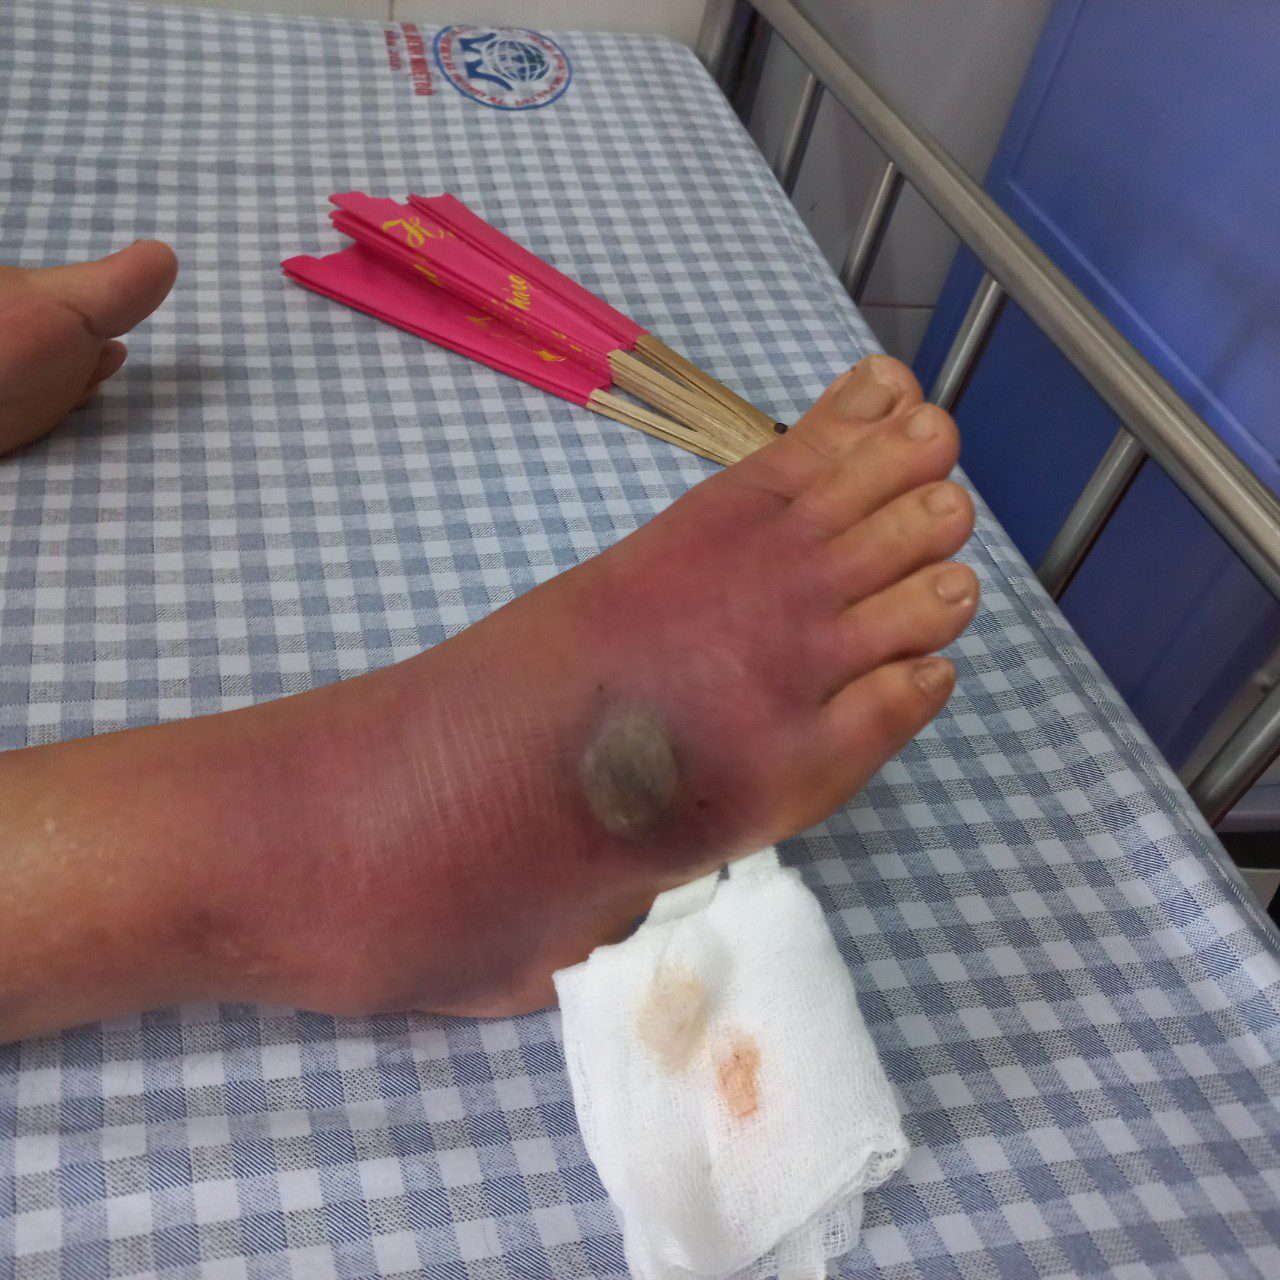 Hình ảnh khi người bệnh vào viện sưng tấy lan tỏa toàn bộ mu chân lên cổ chân, tại trung tâm vết cắn đang có dấu hiệu hoại tử ướt